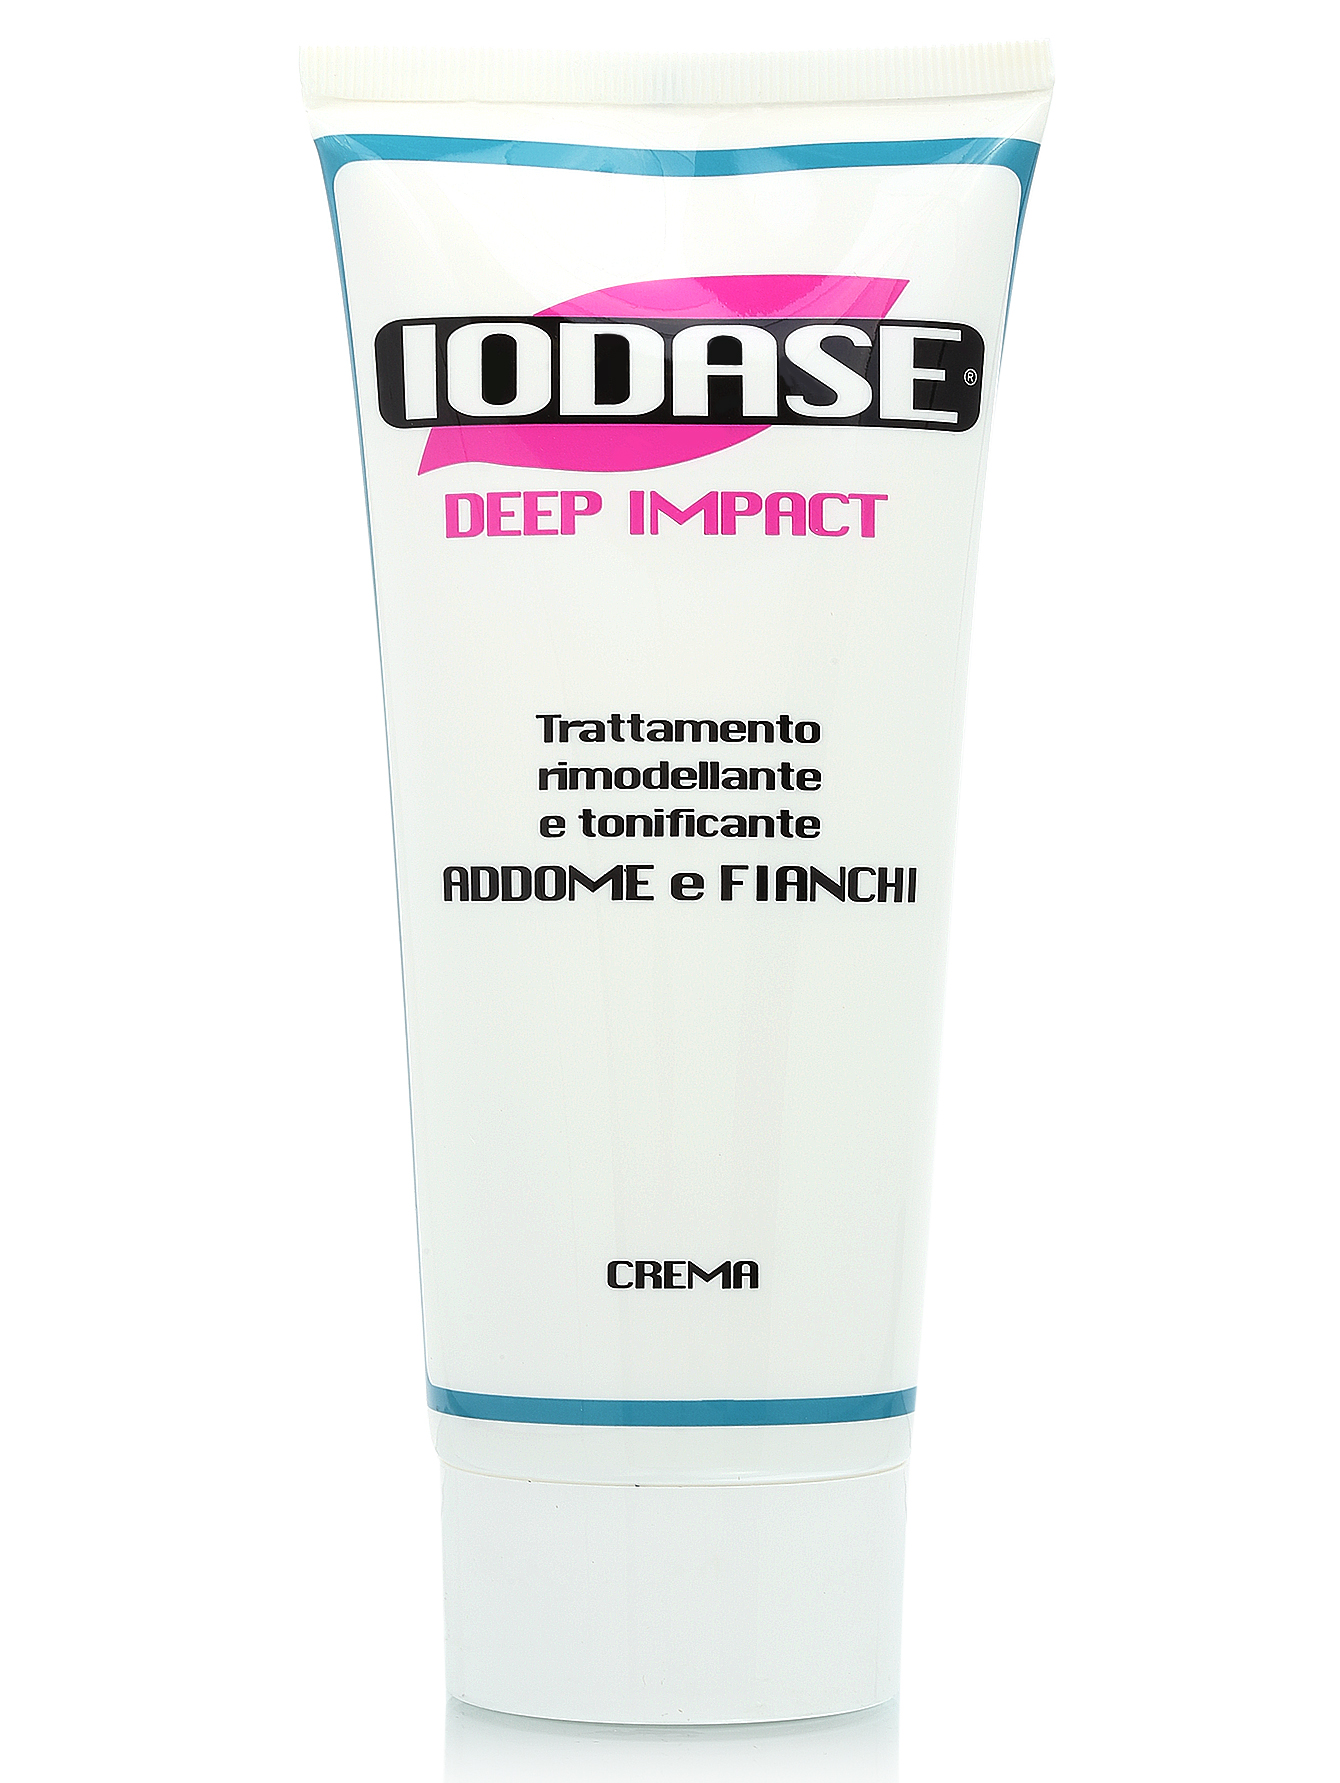  Крем для тела "Iodase Deep Impact crema" - Body Care, 200ml - Общий вид